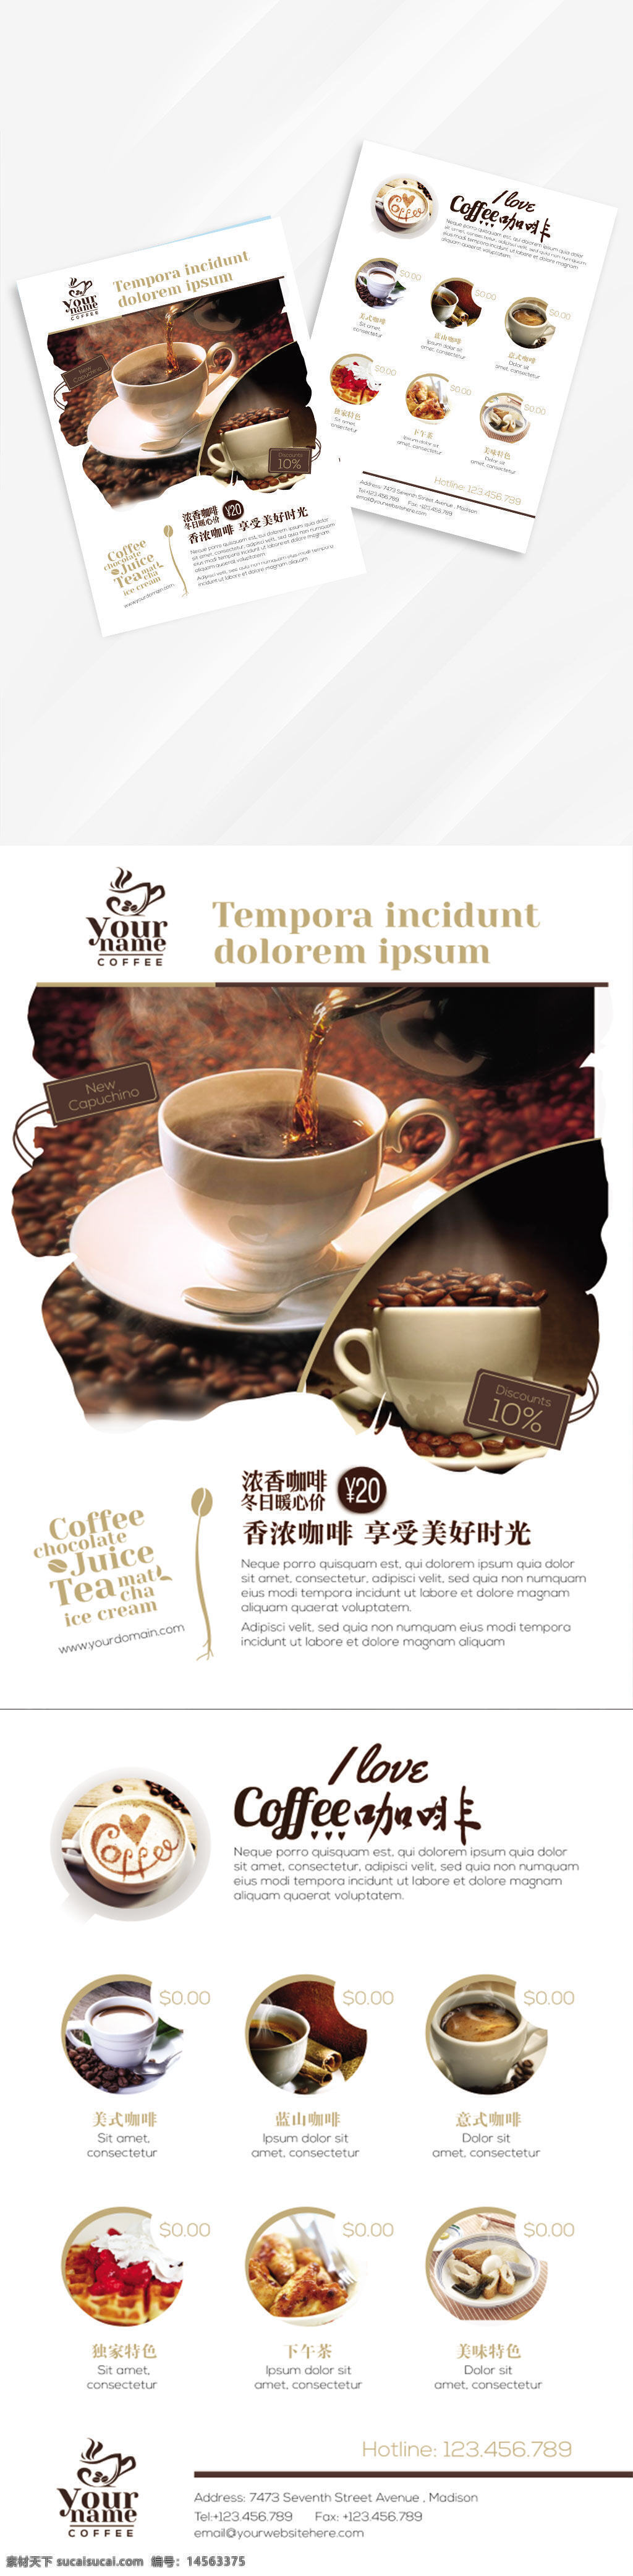 咖啡海报 咖啡 咖啡展板 咖啡宣传单 卡布奇诺 星巴克 咖啡装饰画 咖啡厅 咖啡店 咖啡馆 咖啡文化 咖啡厅文化 咖啡会所